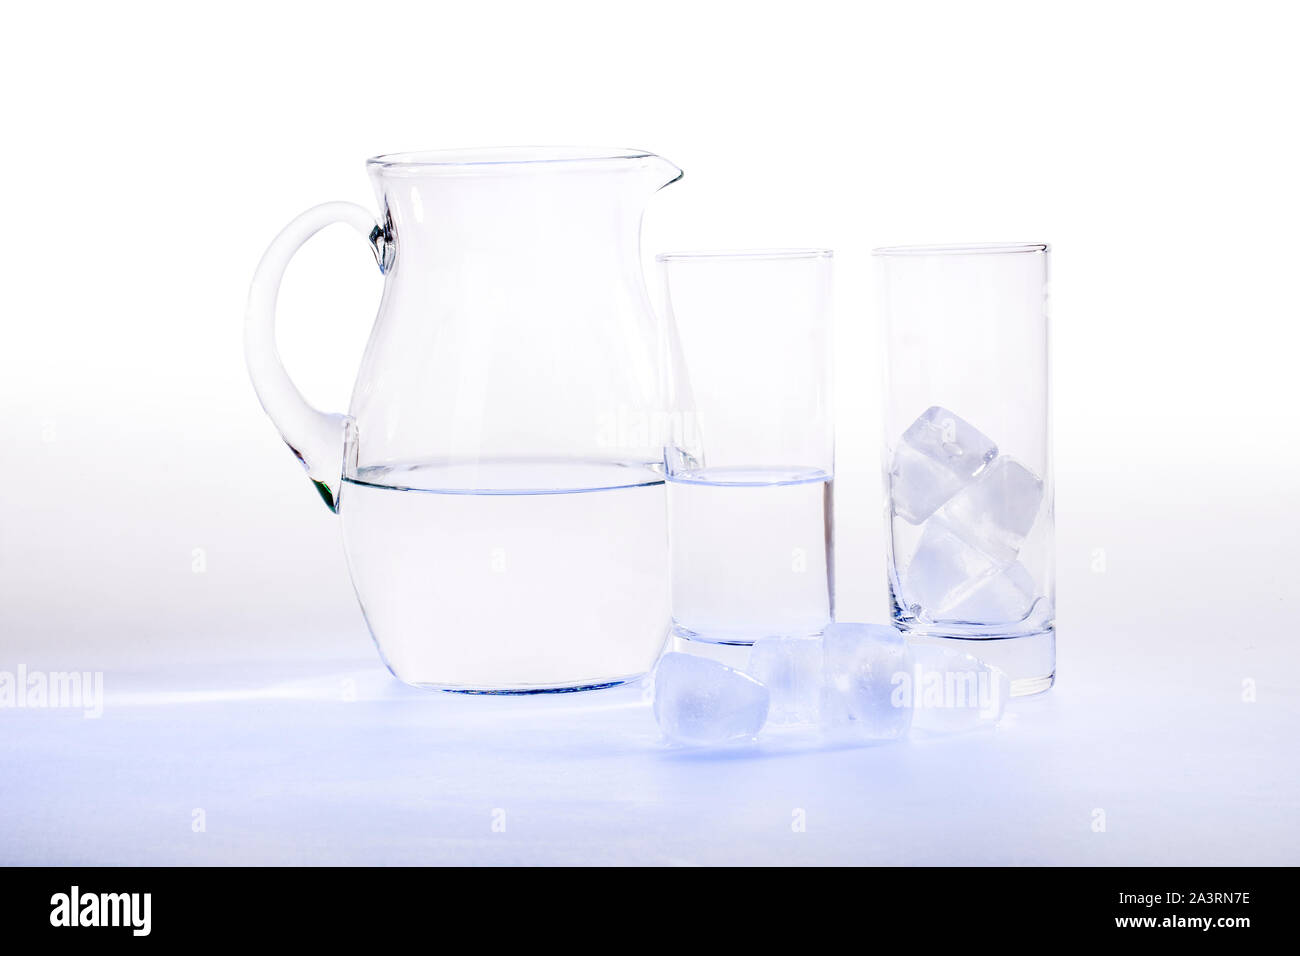 Studio immagine della brocca e bicchieri da acqua (con percorso di clipping) Foto Stock